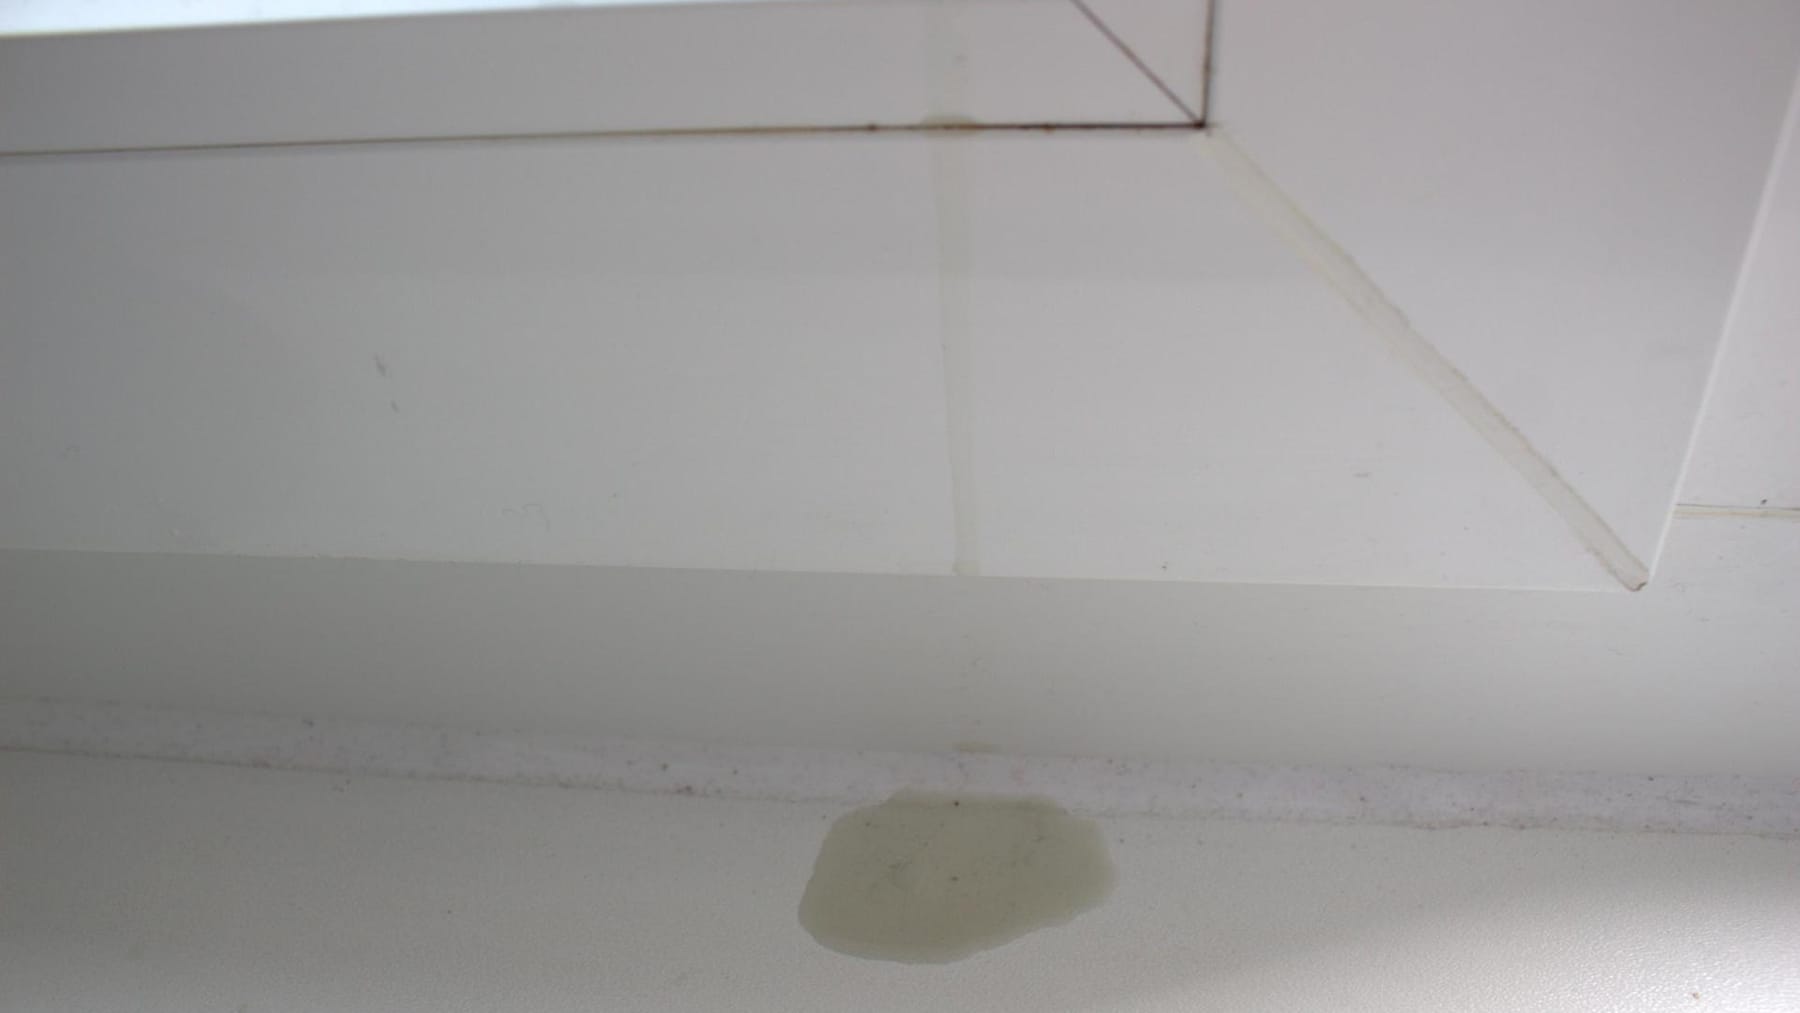 Fenster putzen: Spüli sorgt für saubere Scheiben